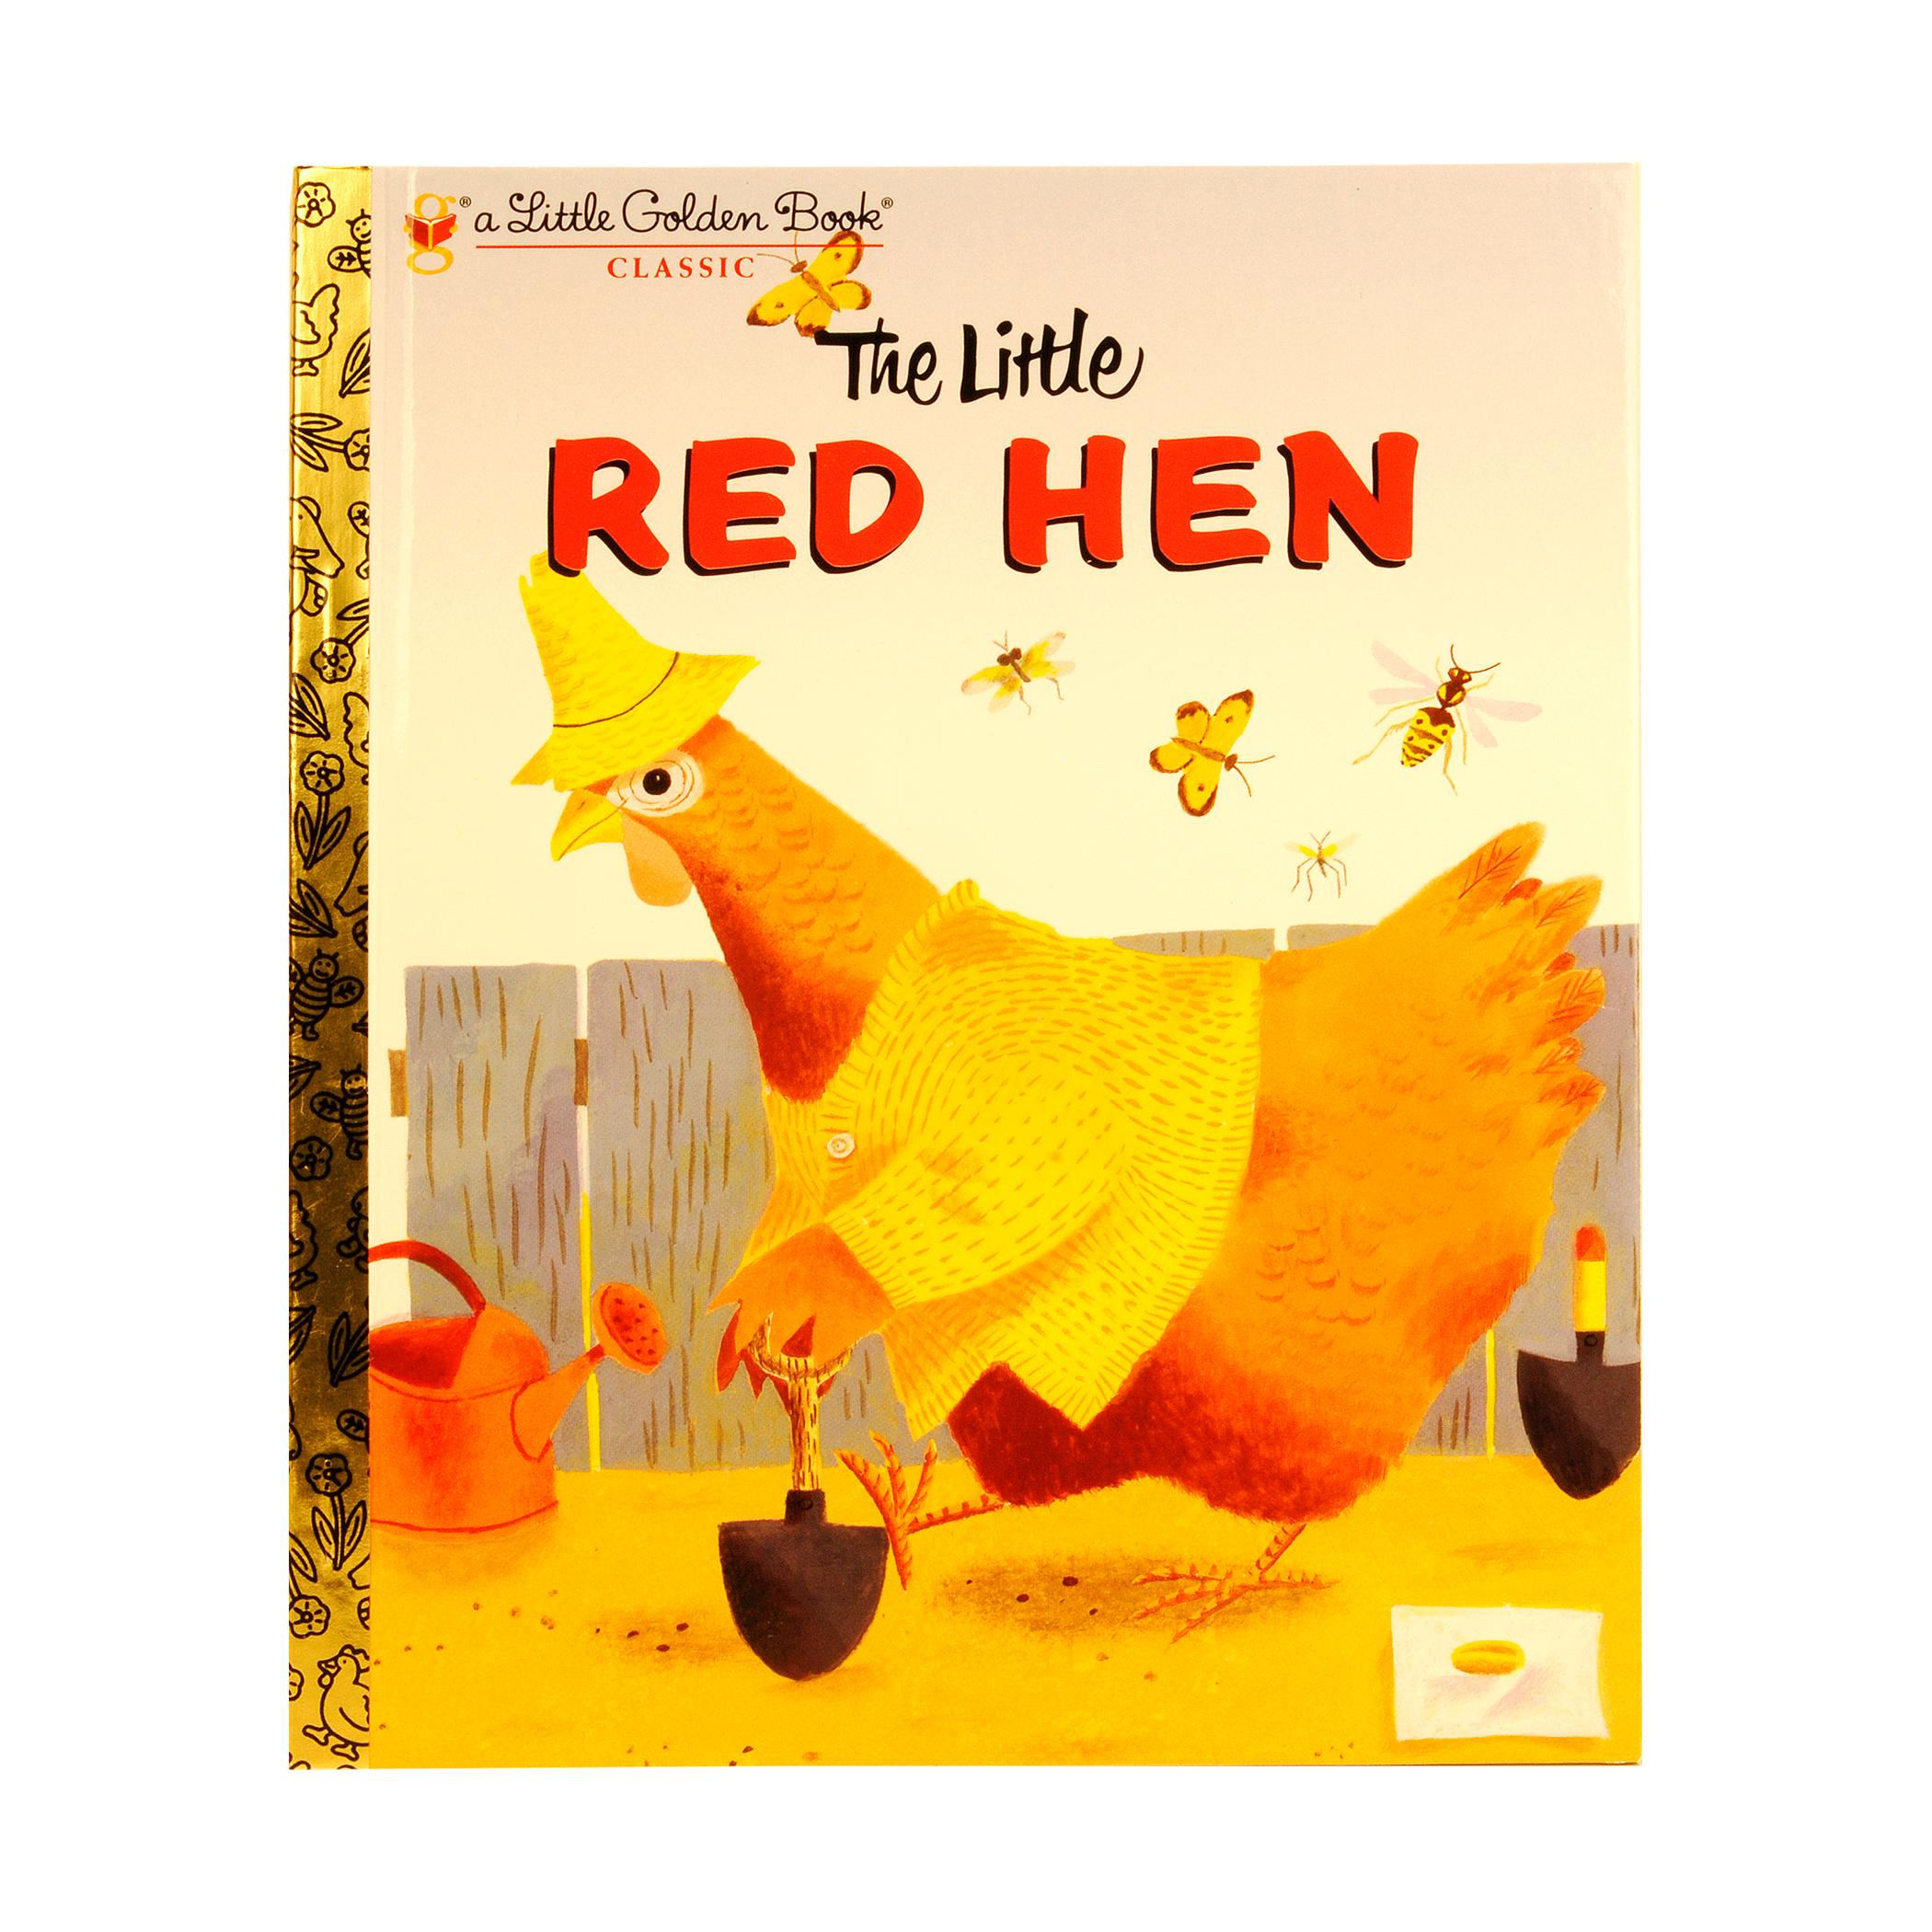  A Little Golden Book - The Little Red Hen